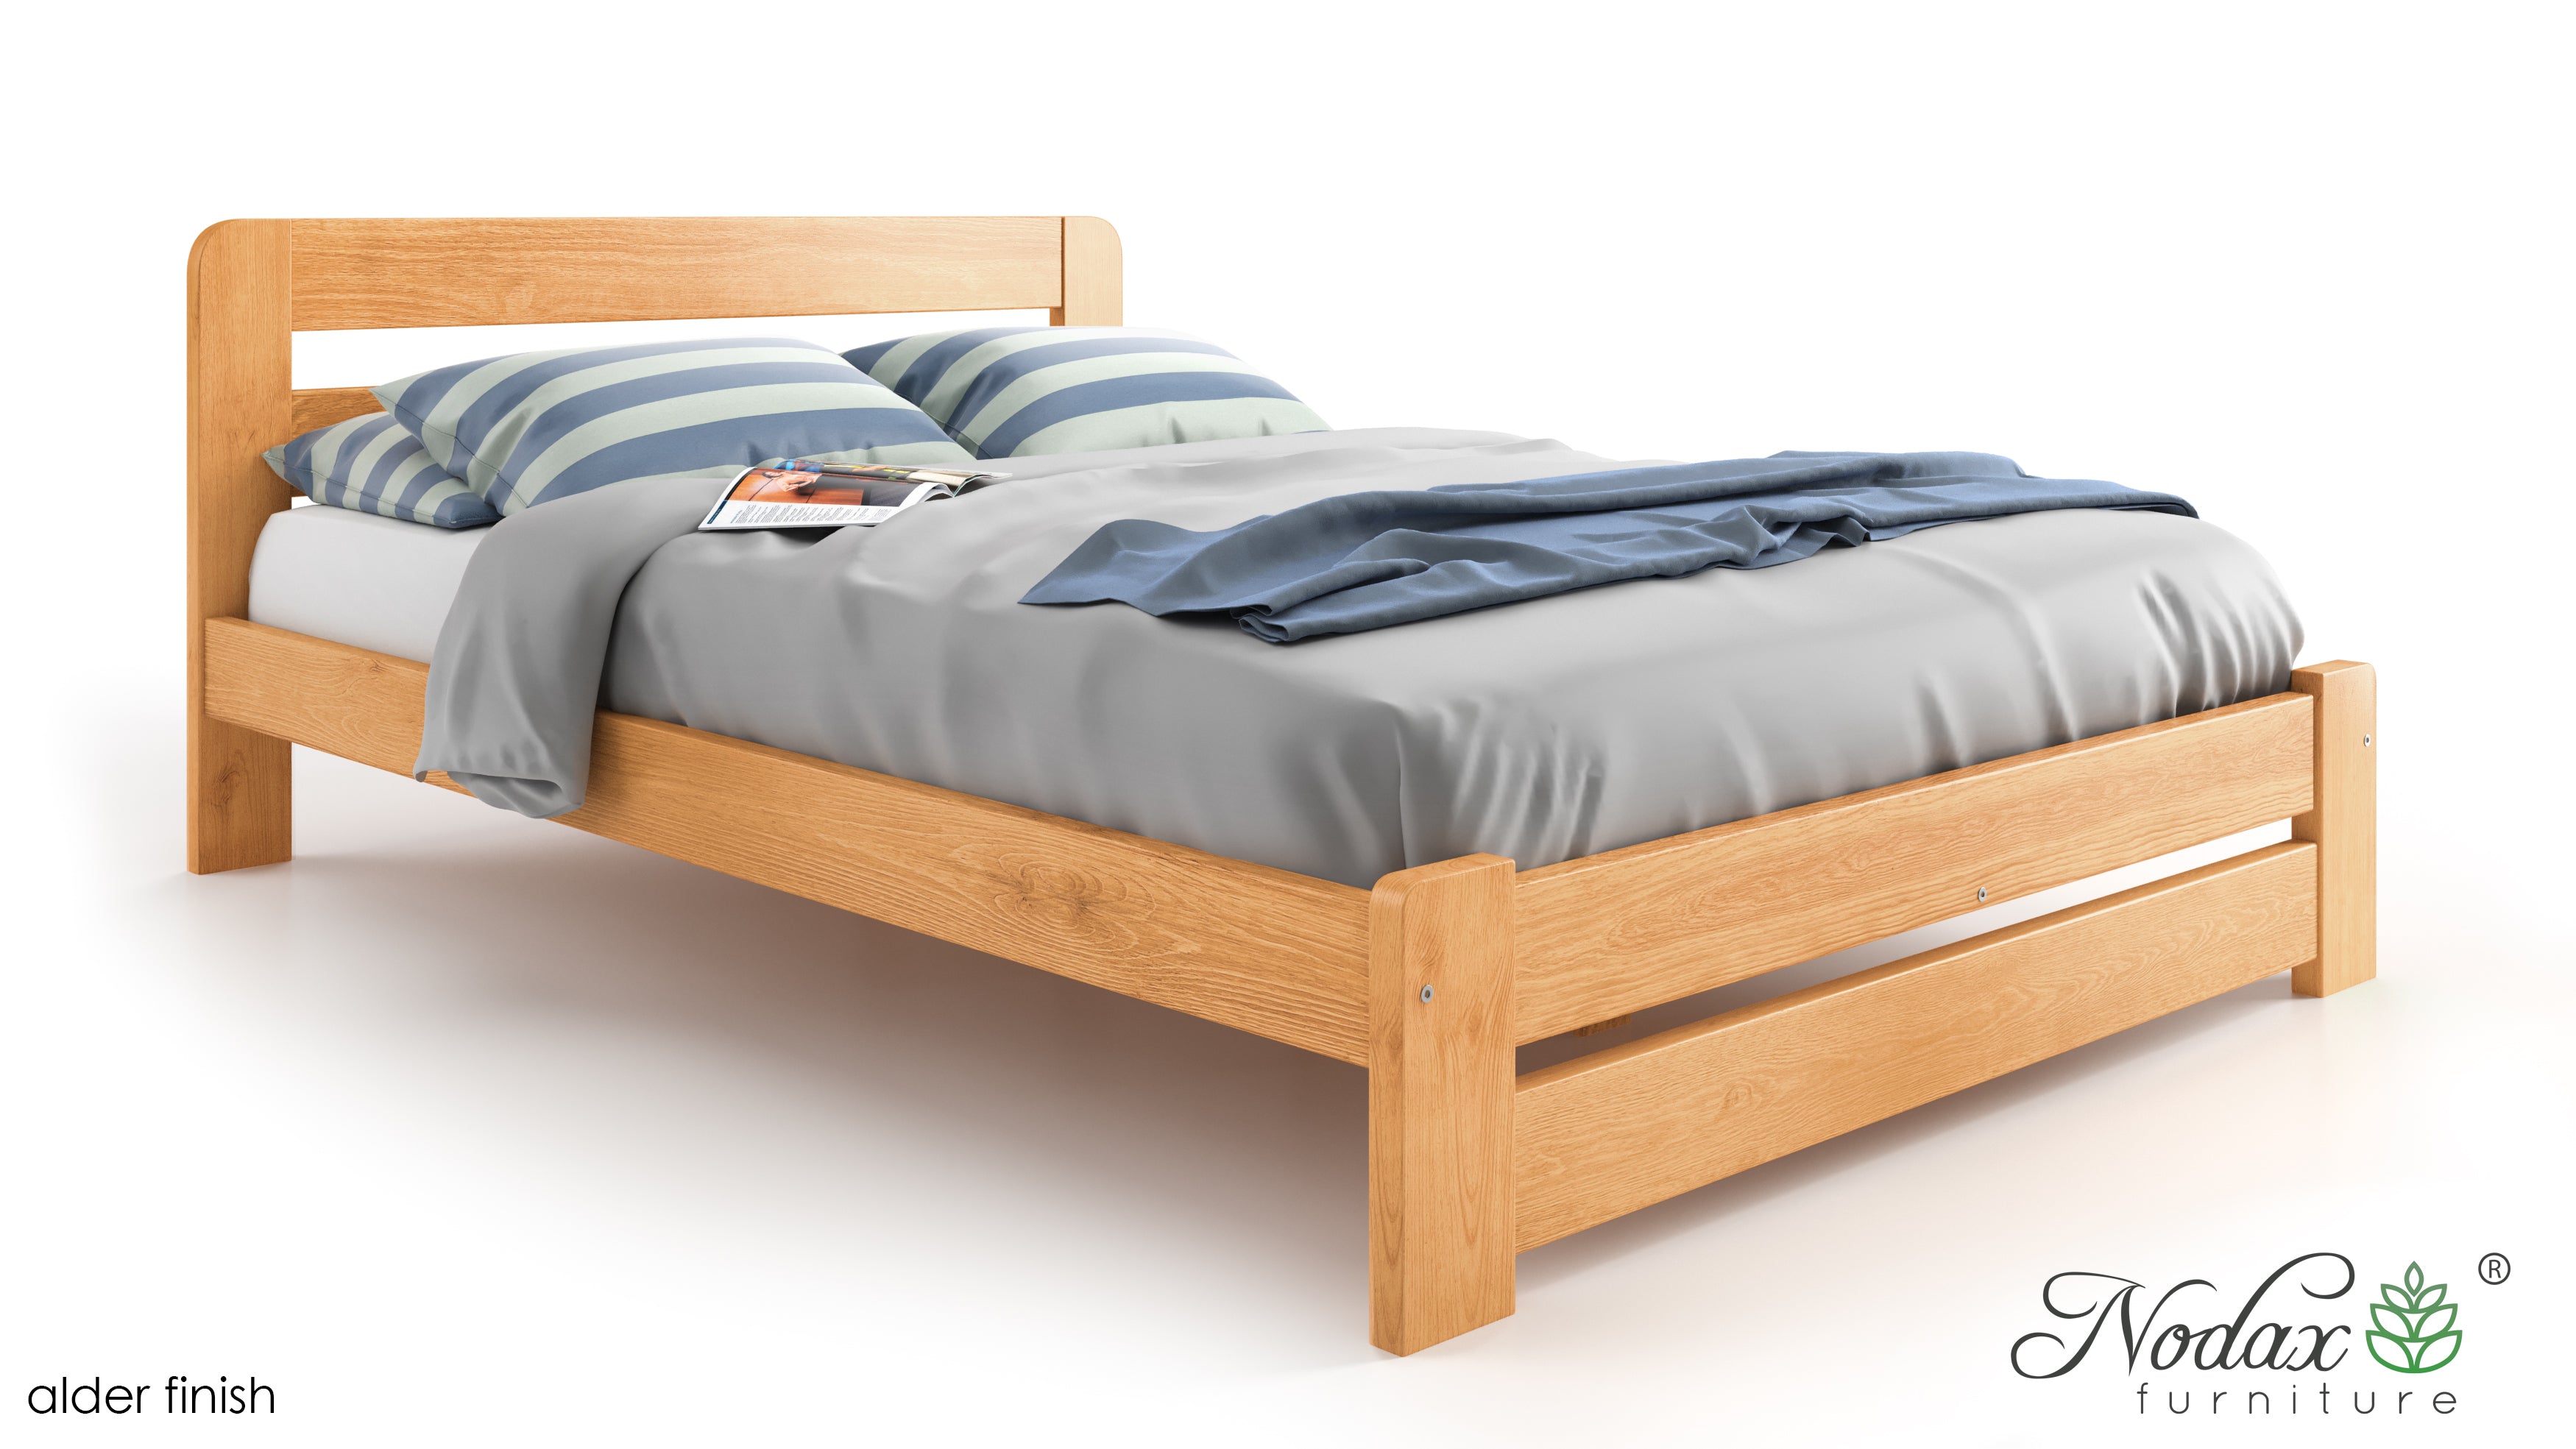 Wooden-bed-frame-Aurora-beds-online-king-size